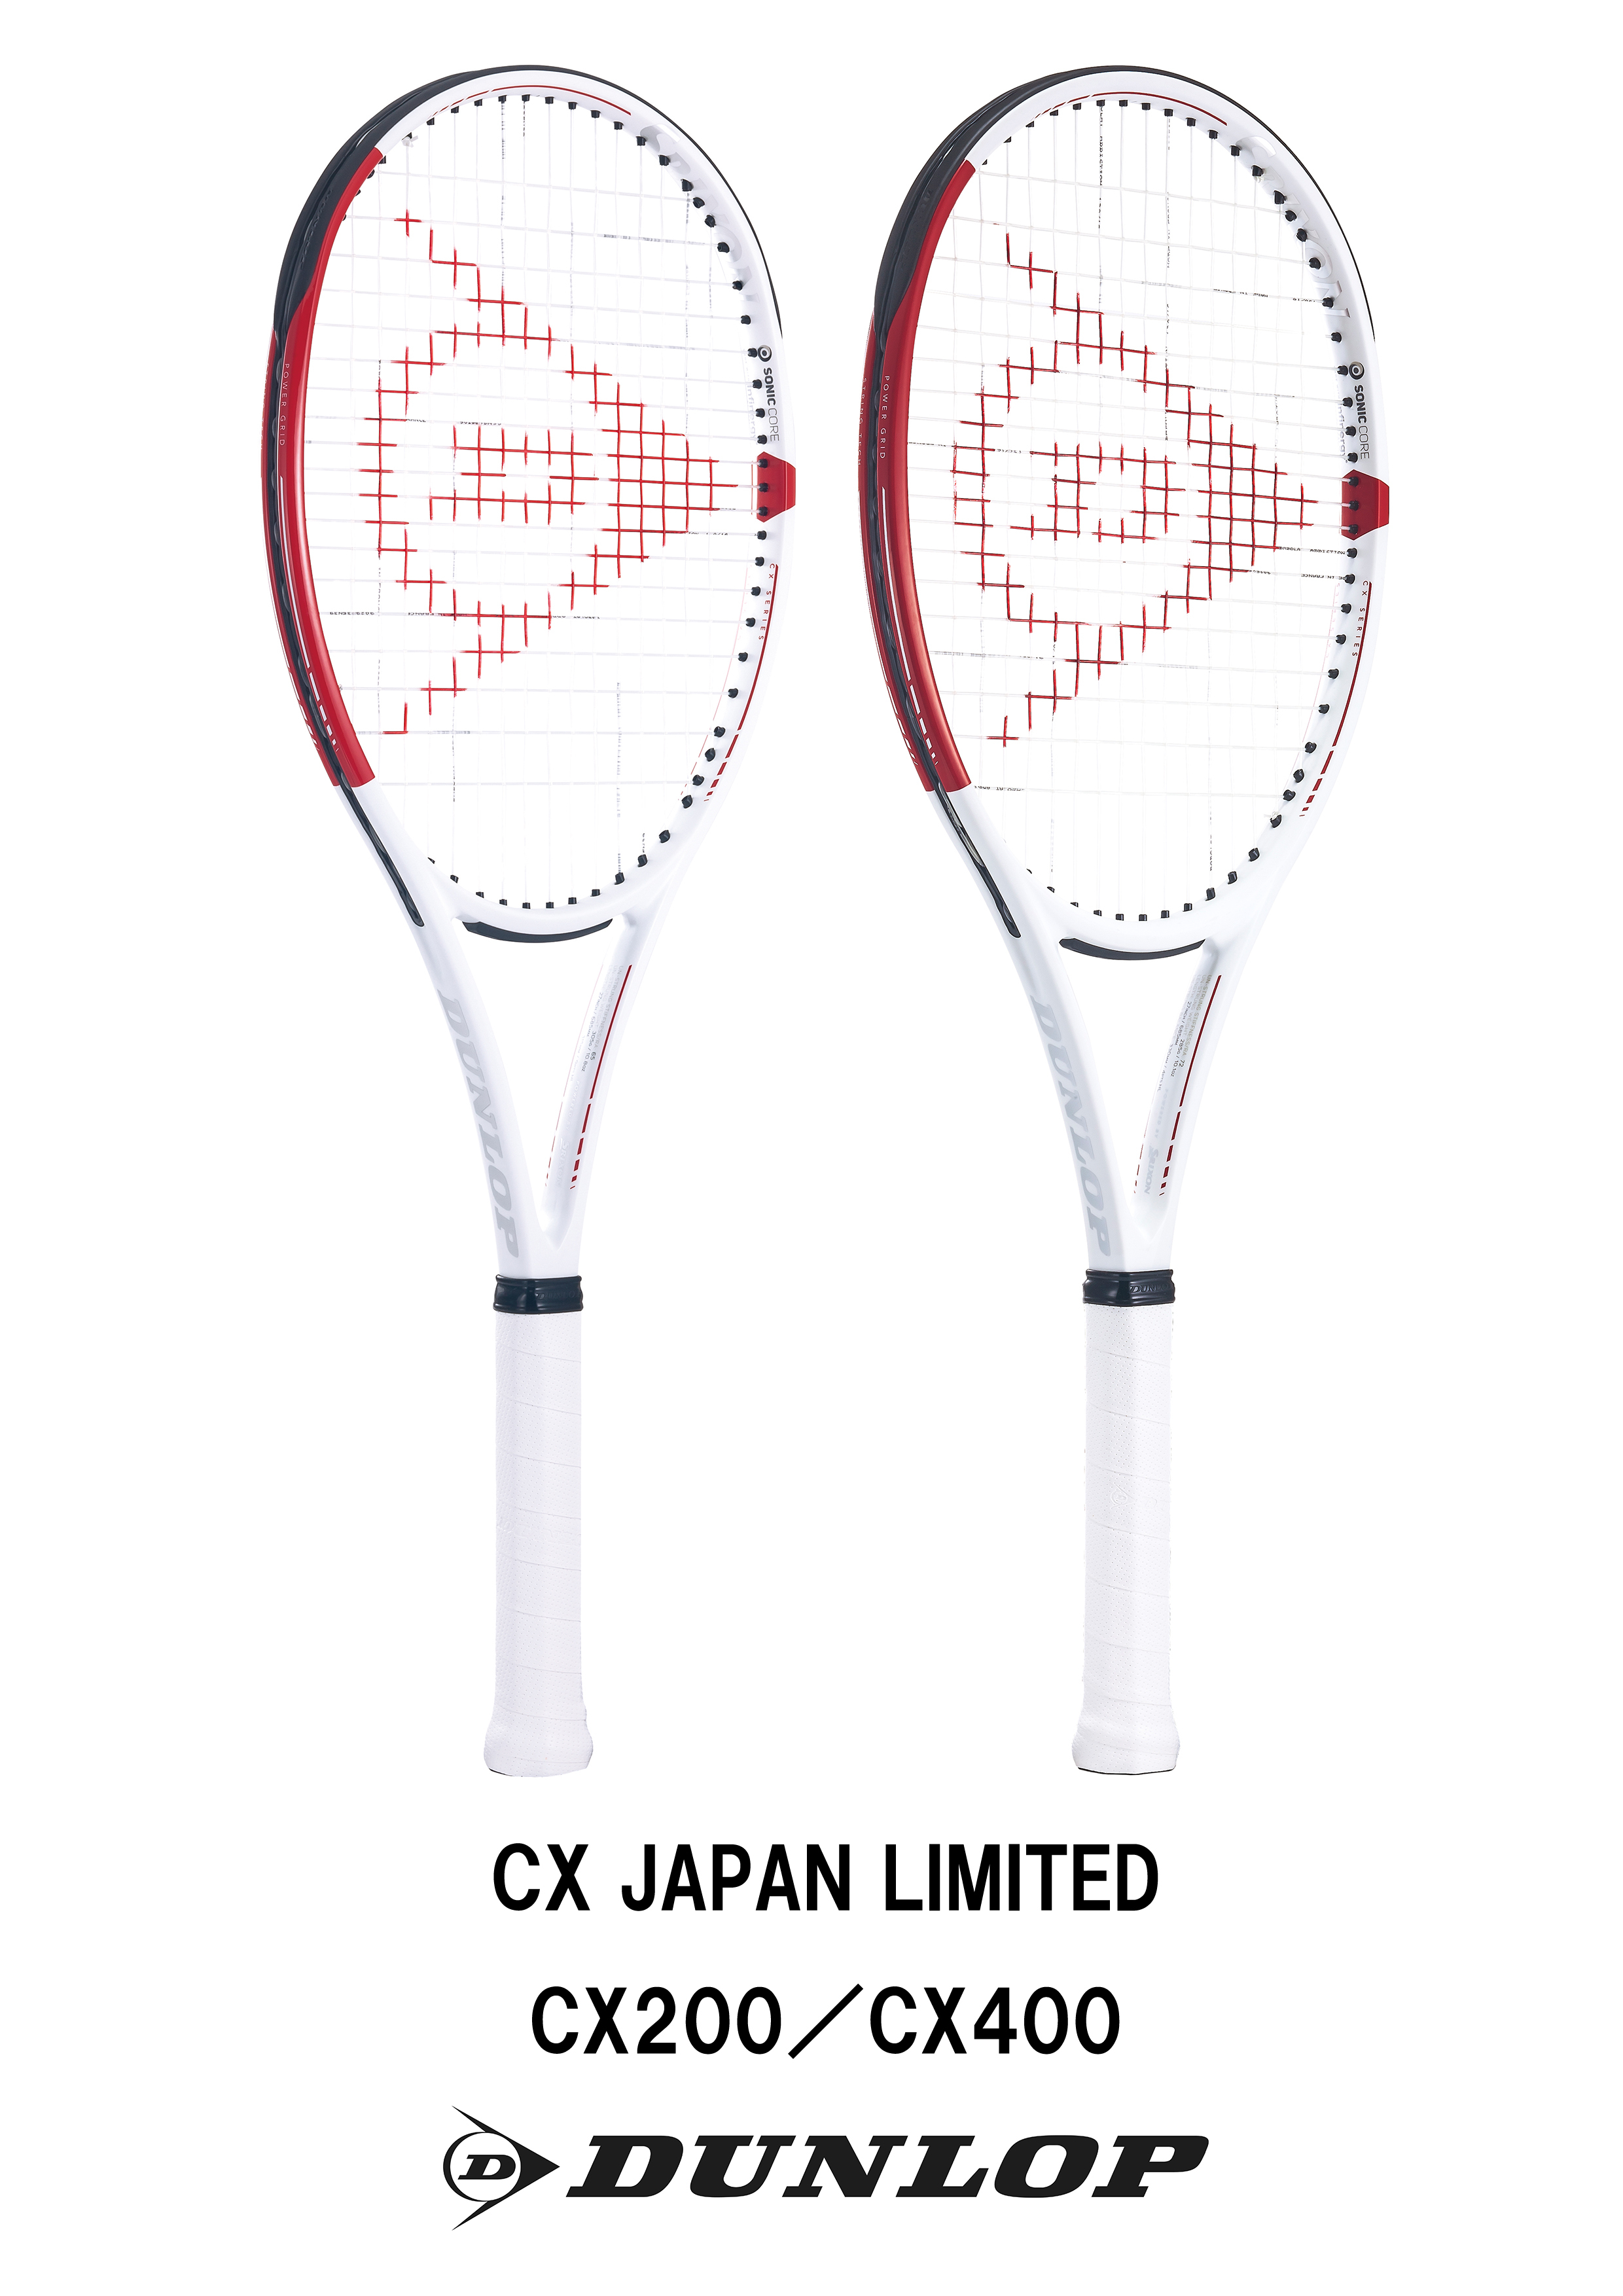 ダンロップテニスラケット「CX」シリーズ日本限定カラー2機種を新発売